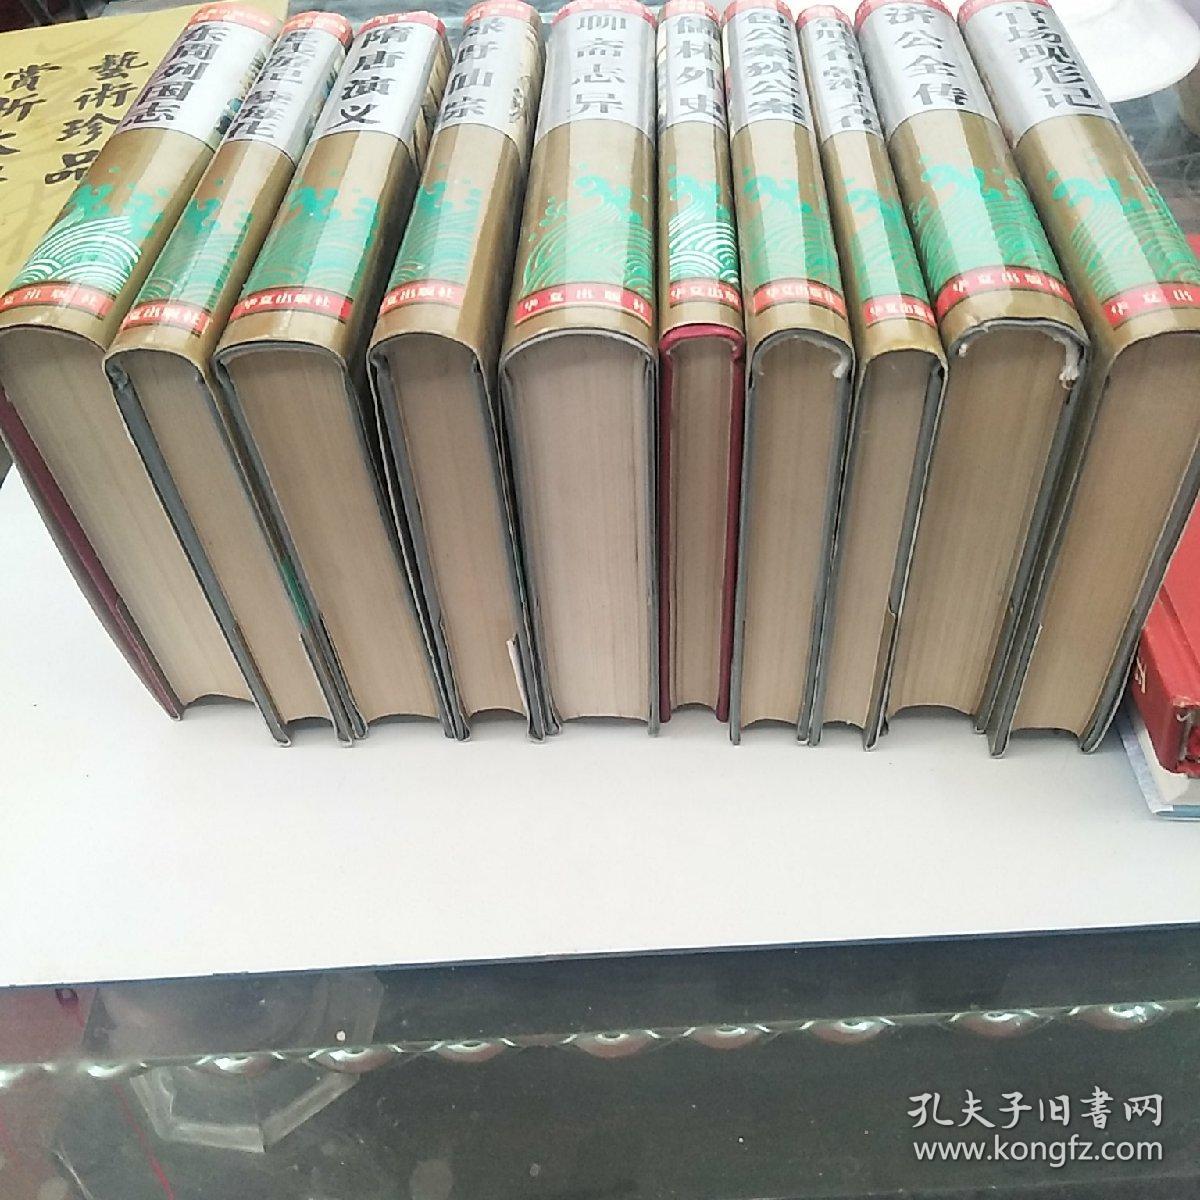 中国古典小说名著百部(十册)